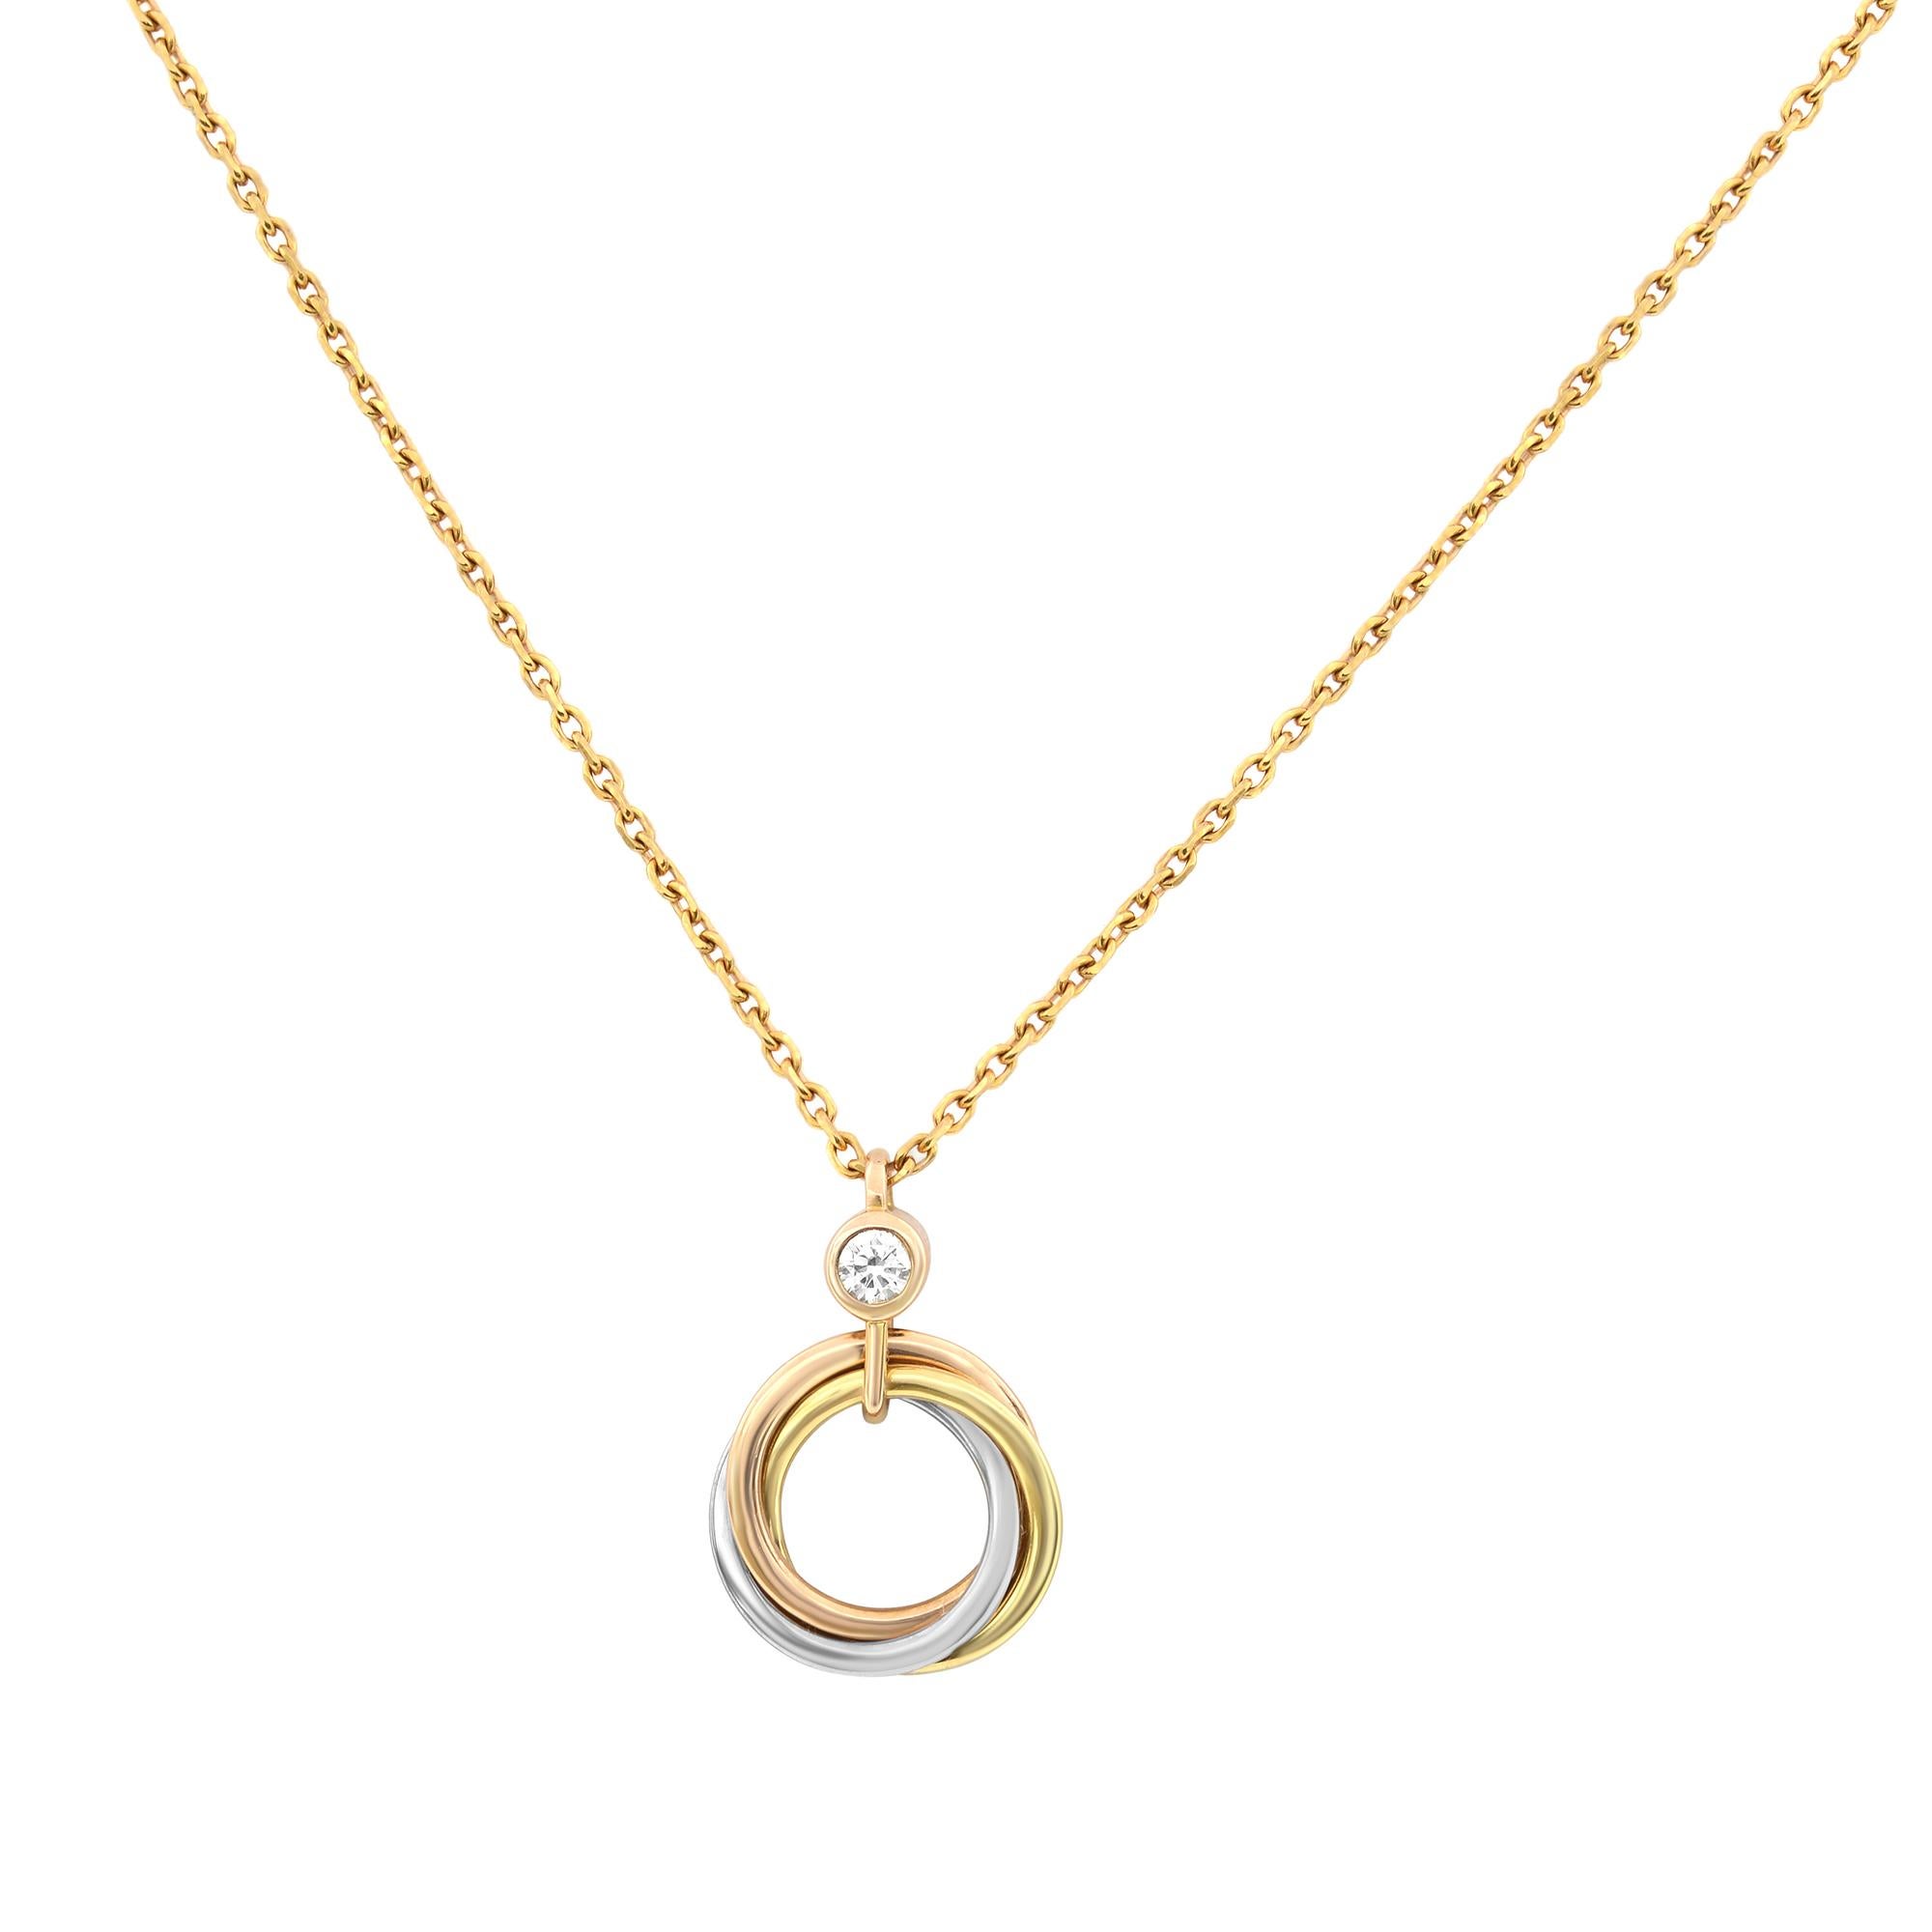 Round Cut Cartier Trinity Diamond Pendant Necklace 18K Tricolor Gold 0.04cttw